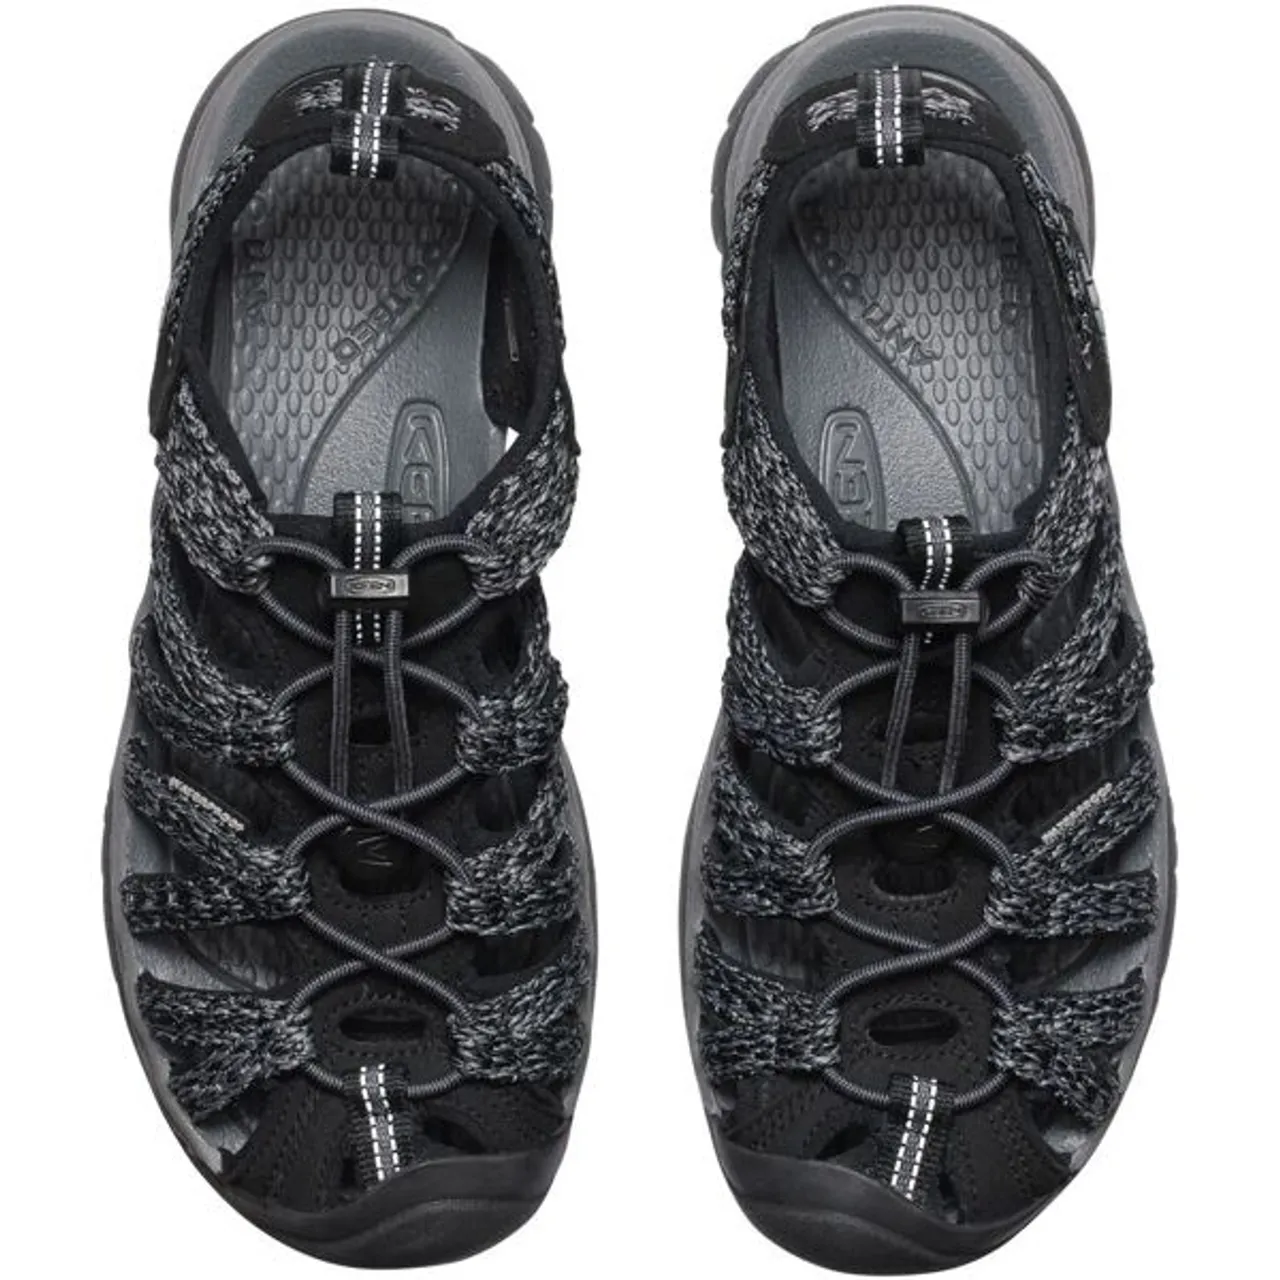 Sandale KEEN "WHISPER" Gr. 41, schwarz (black, steel grey) Schuhe Halbschuhe